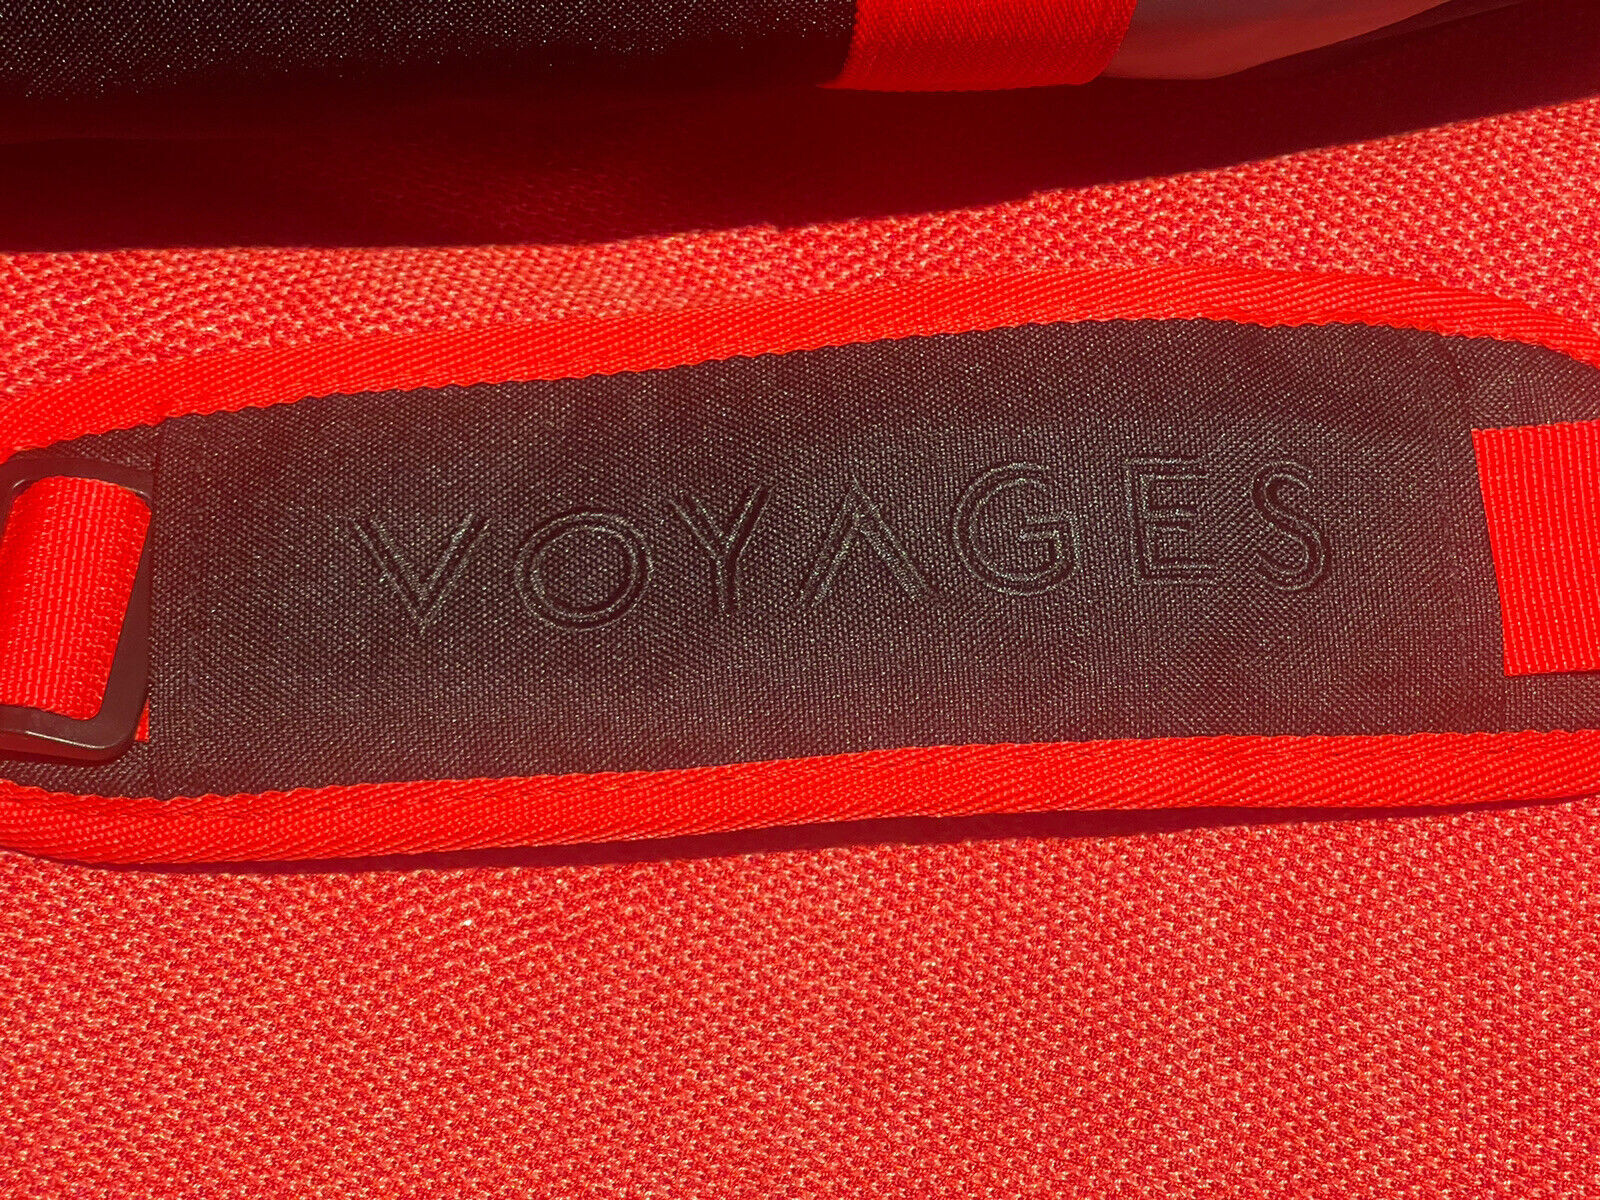 NEW - VIRGIN VOYAGES - Duffel Bag With Shoulder Strap